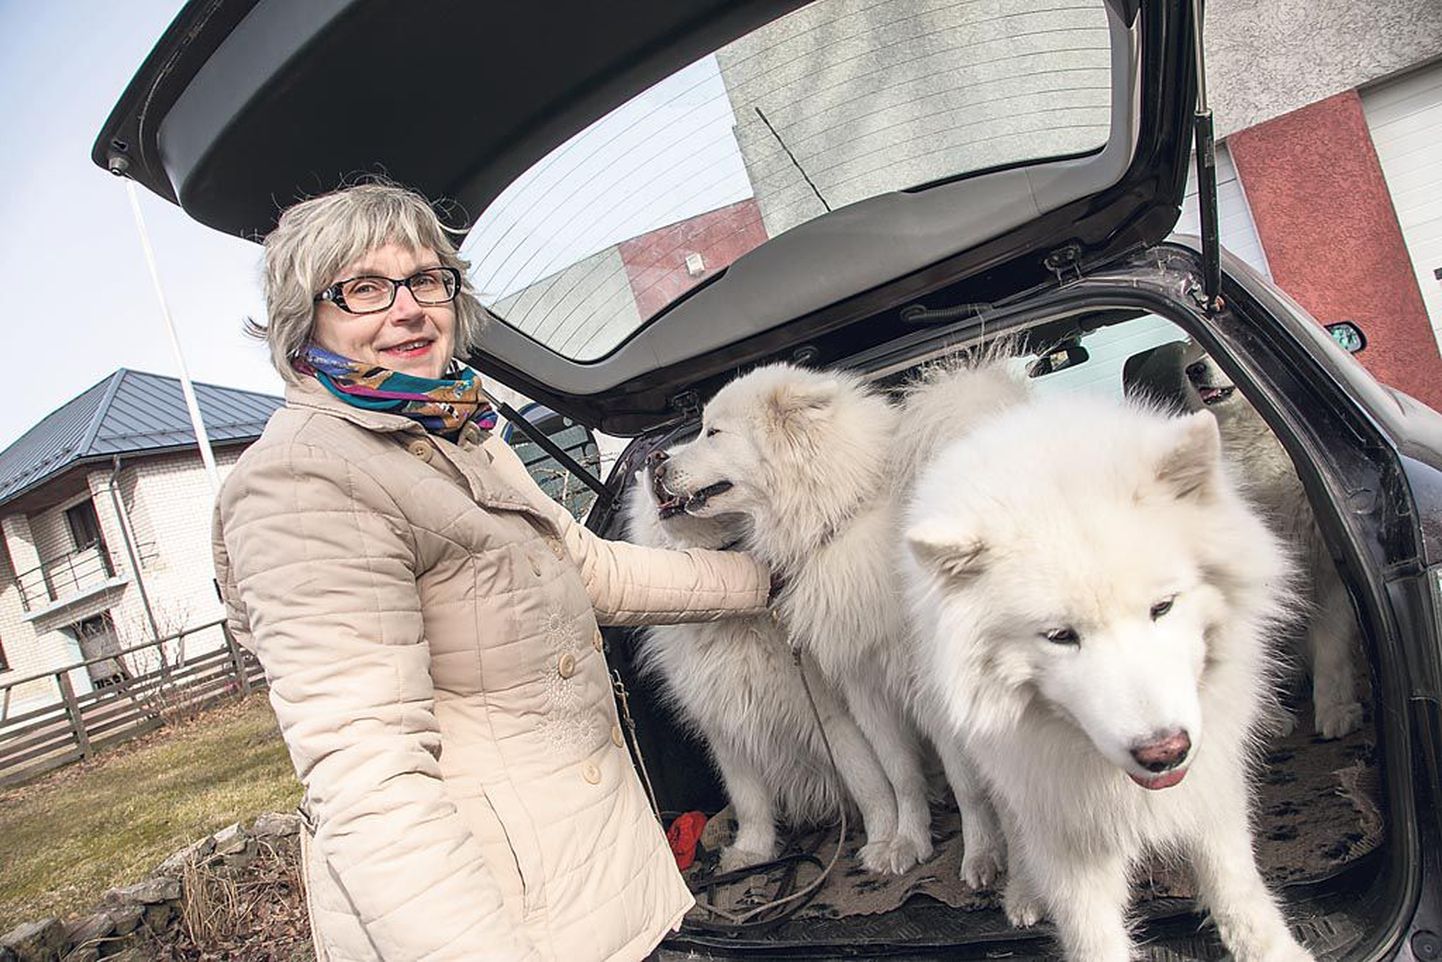 Need pole kodutud koerad, vaid Pärnu kodutute loomade varjupaiga juhataja pere lemmikloomad – samojeedi koerad, kes õpetasid oma perenaist elule teistsuguse nurga alt vaatama.